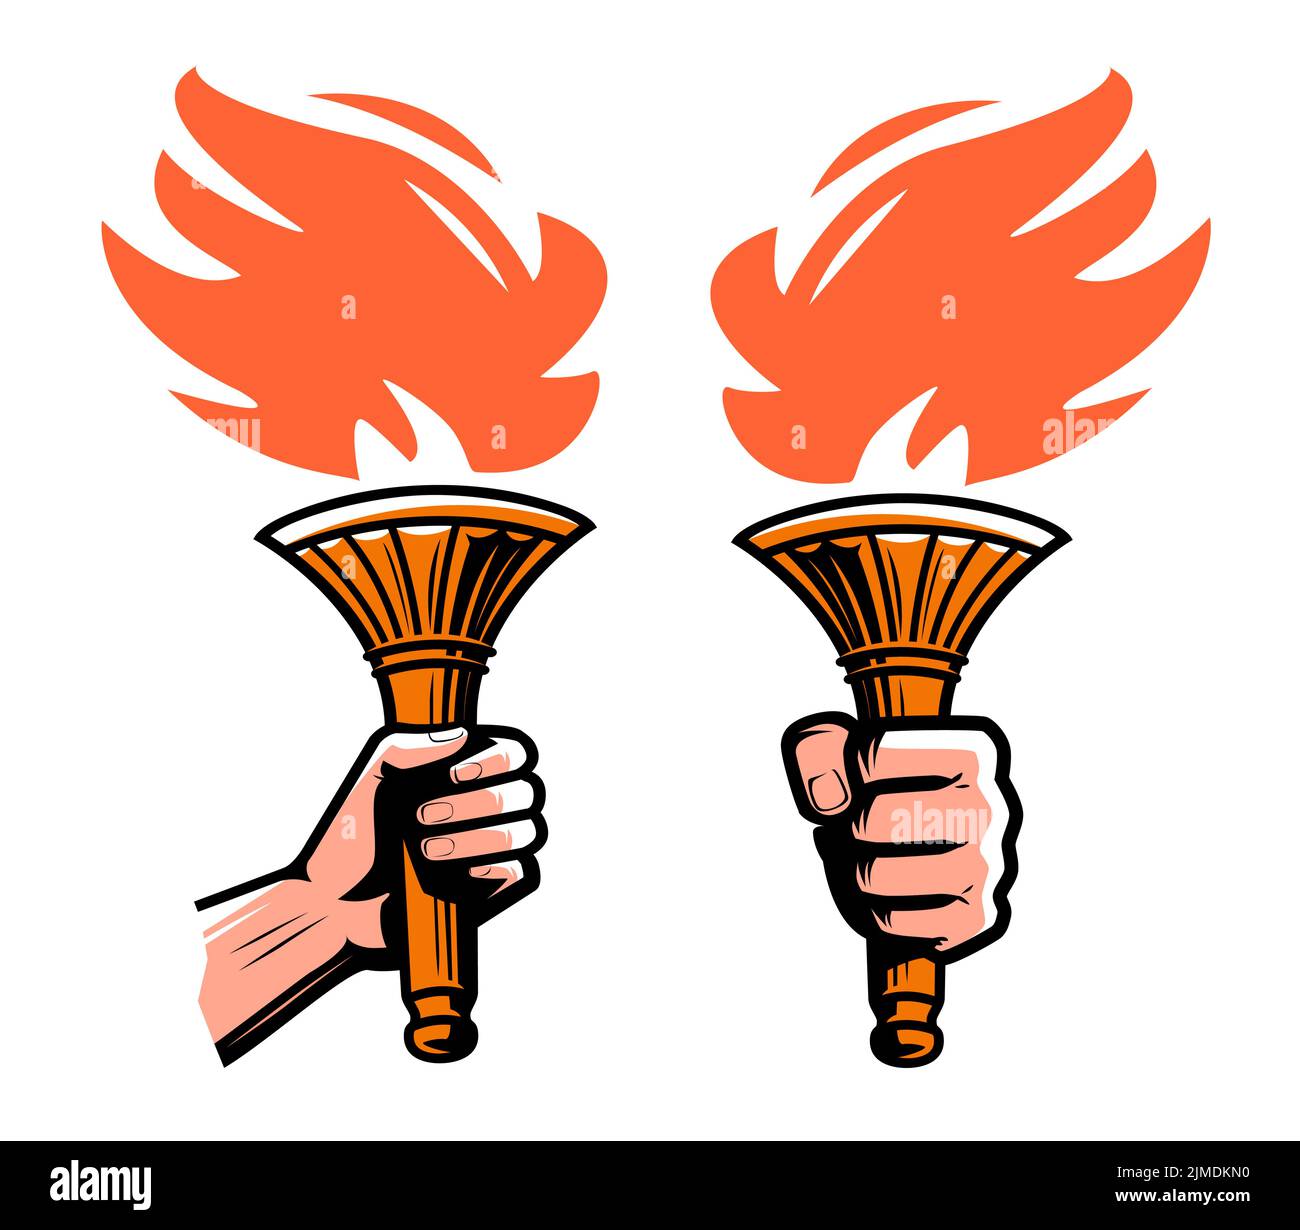 Emblema de antorcha ardiente. Antorcha con llama de fuego, símbolo de iluminación o icono. Ilustración vectorial aislada Ilustración del Vector